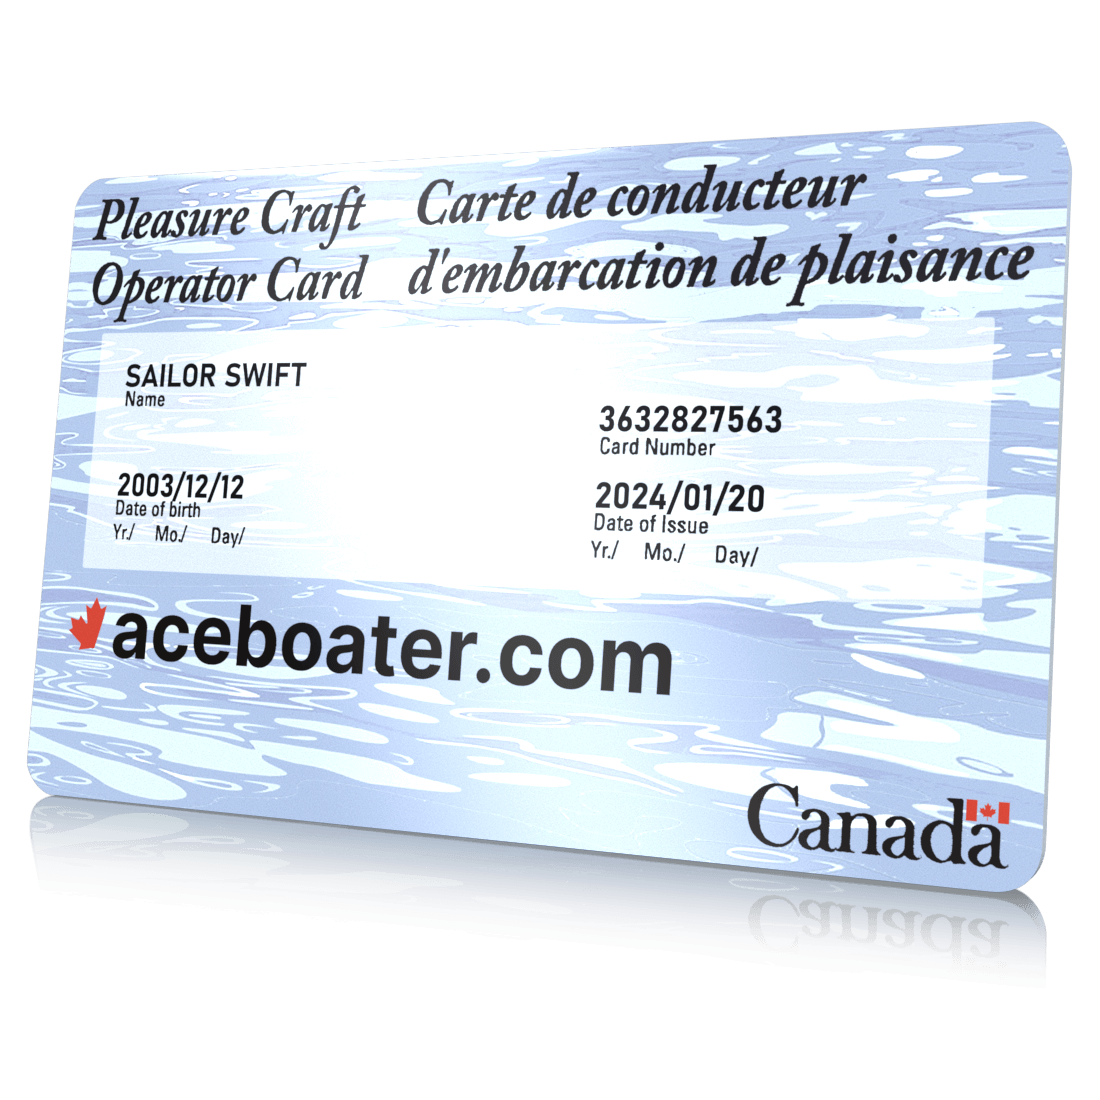 Online boating license